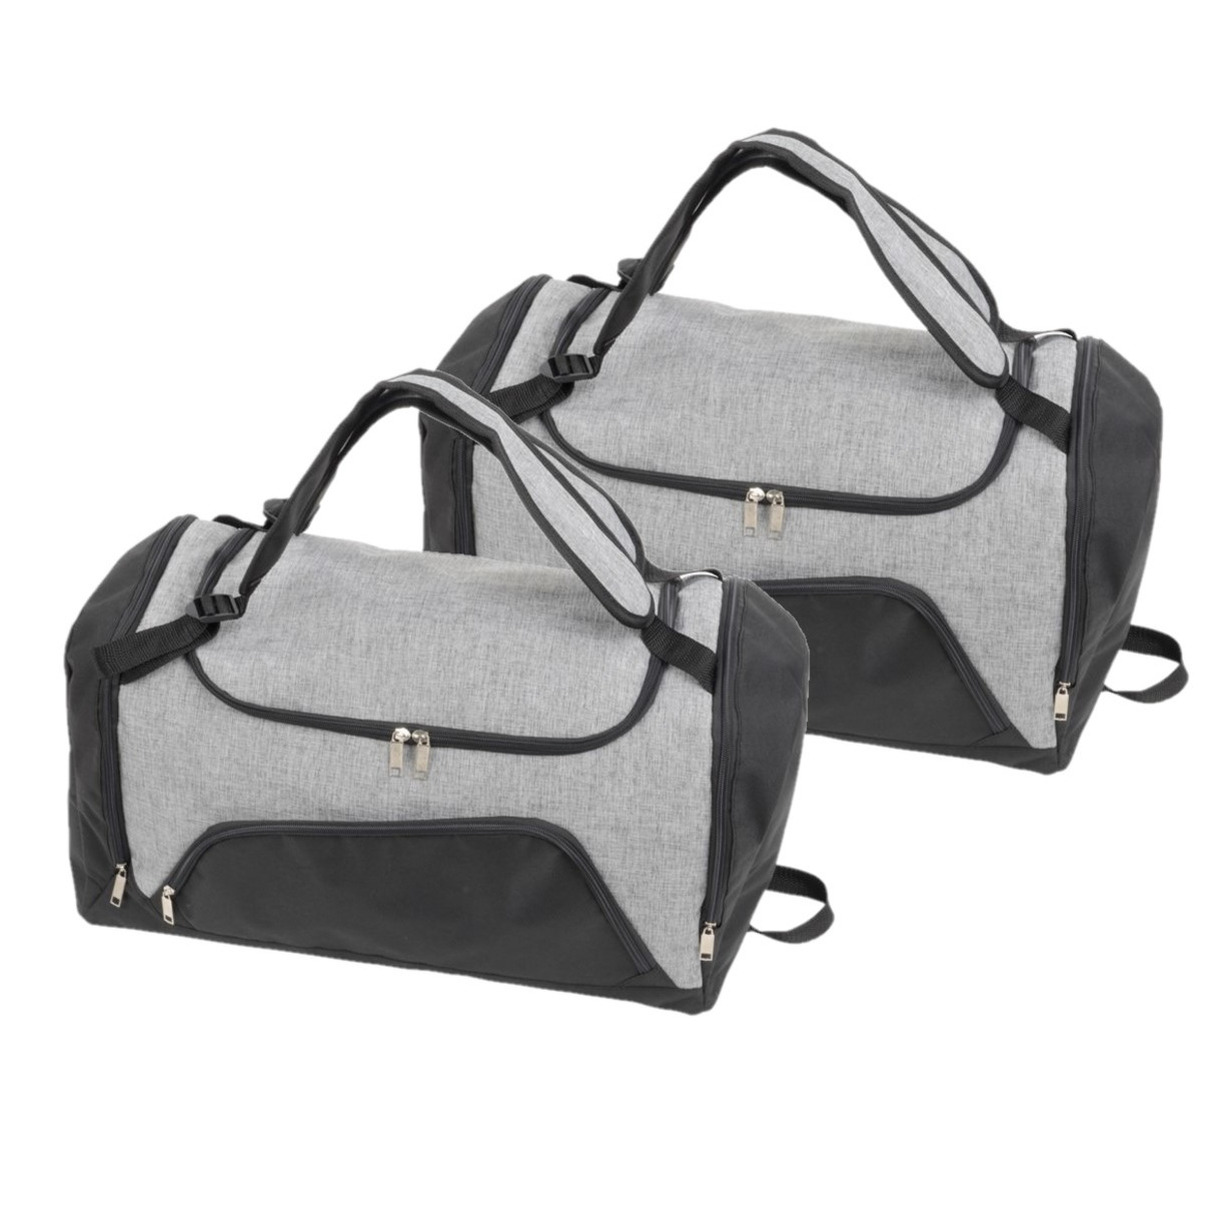 Set van 2x stuks grijs-zwarte sporttassen-fitnesstassen met schoenenvak 55 cm